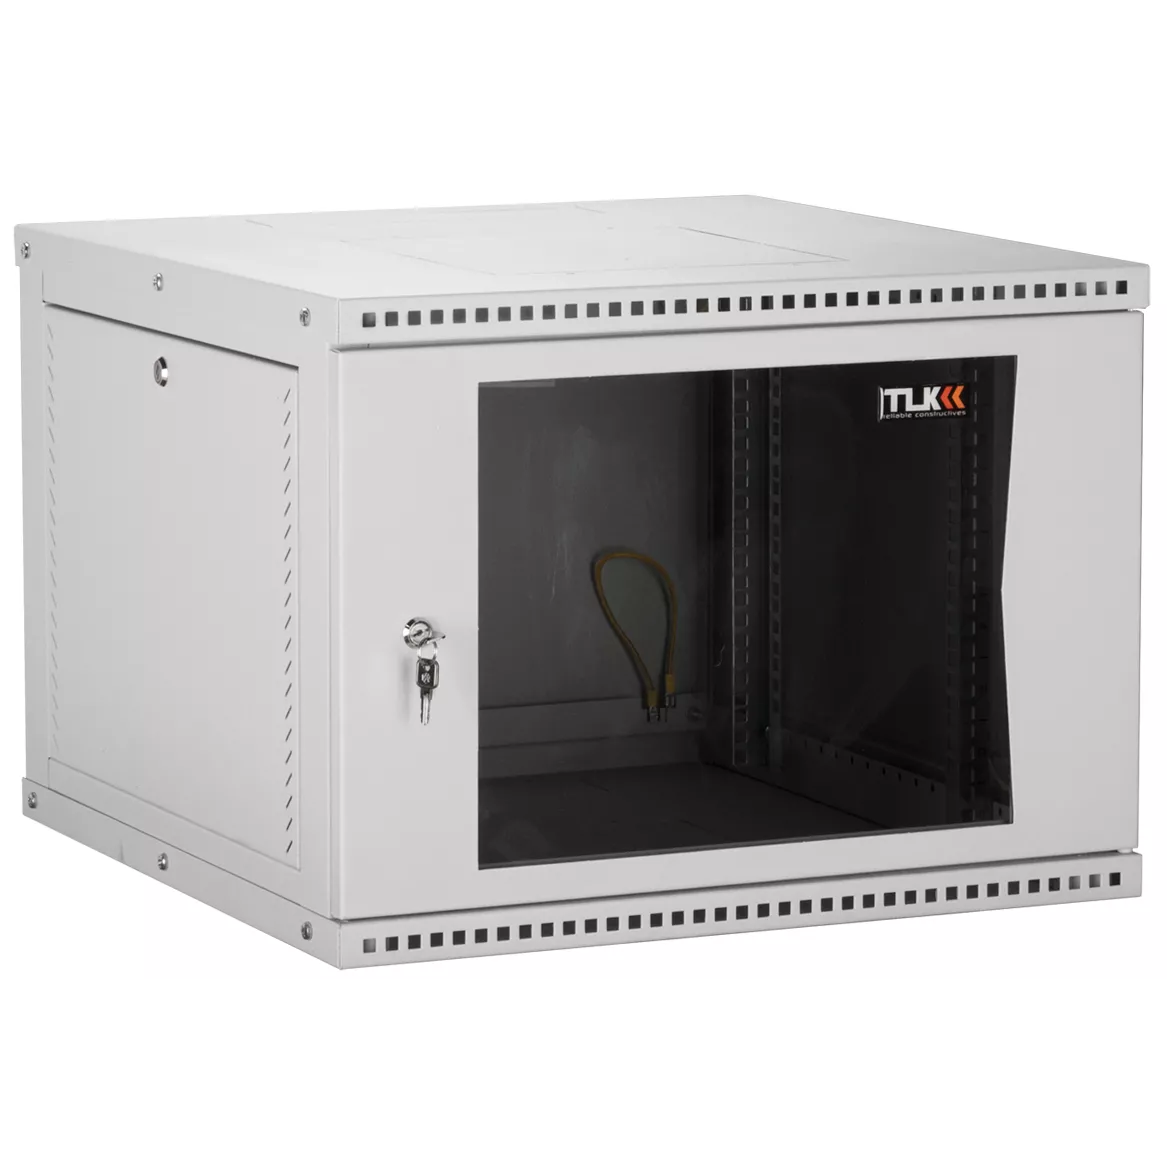 Настенный разборный шкаф TLK 19", 12U, стеклянная дверь, Ш600хВ569хГ450мм, 1 пара монтажных направляющих, серый